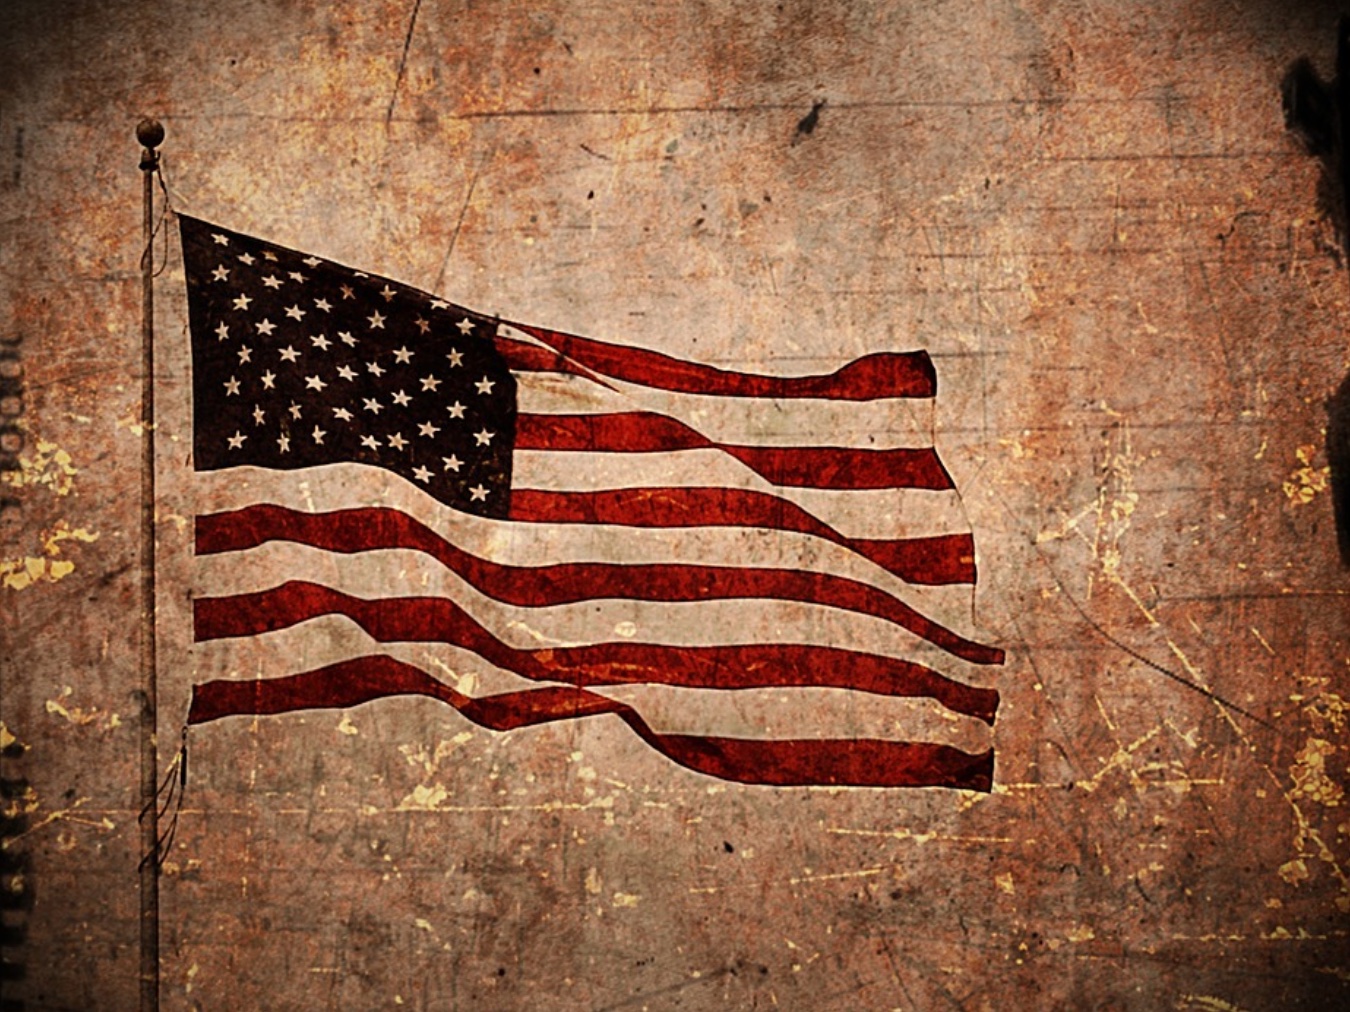 American flag; image by D. William, via Pixabay.com.